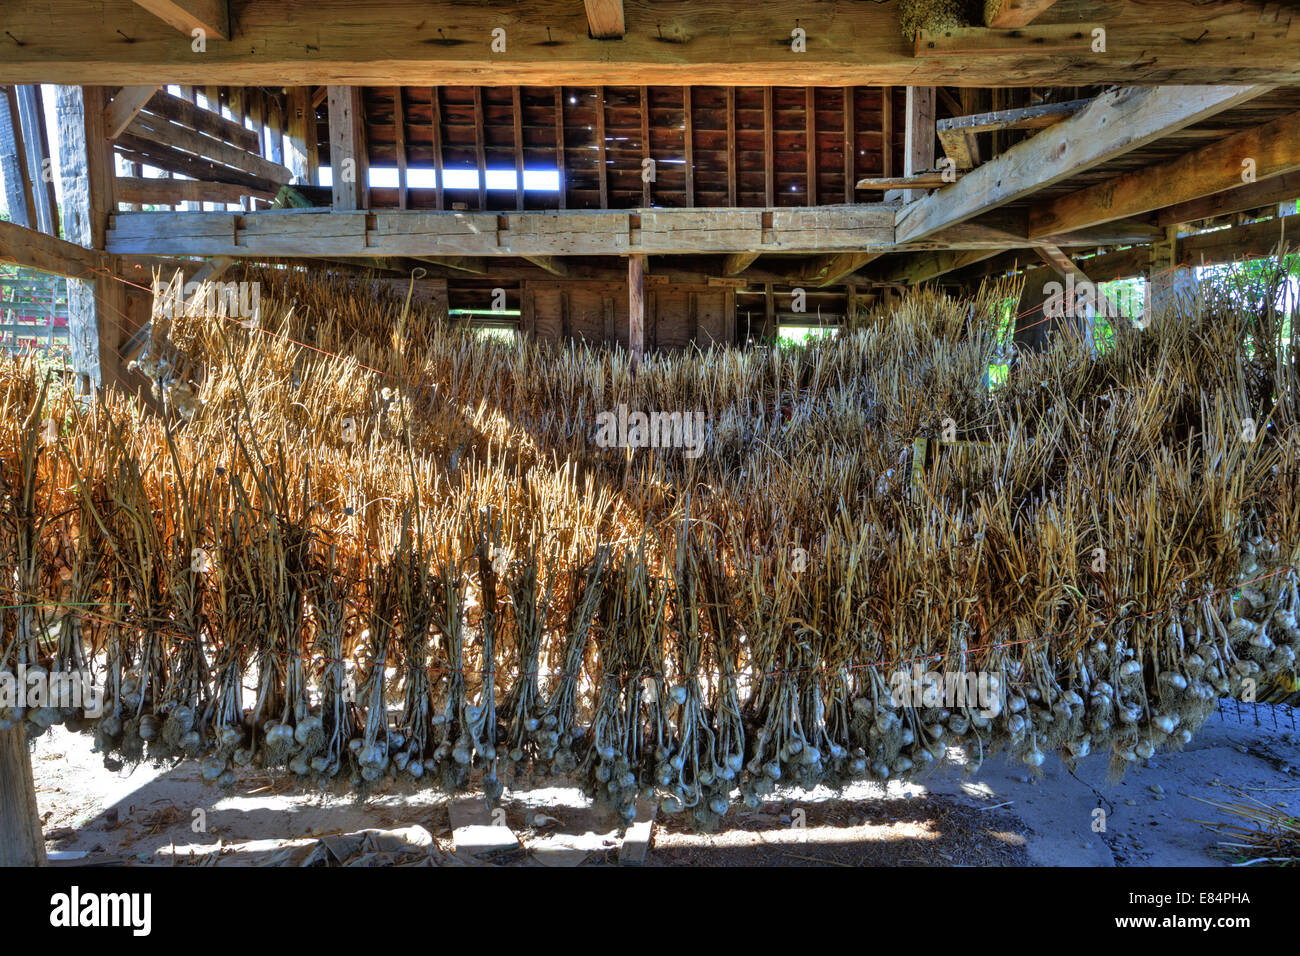 Zwiebeln, Knoblauch, geerntet, aufhängen und trocknen, Mohawk Valley, New York State. Stockfoto